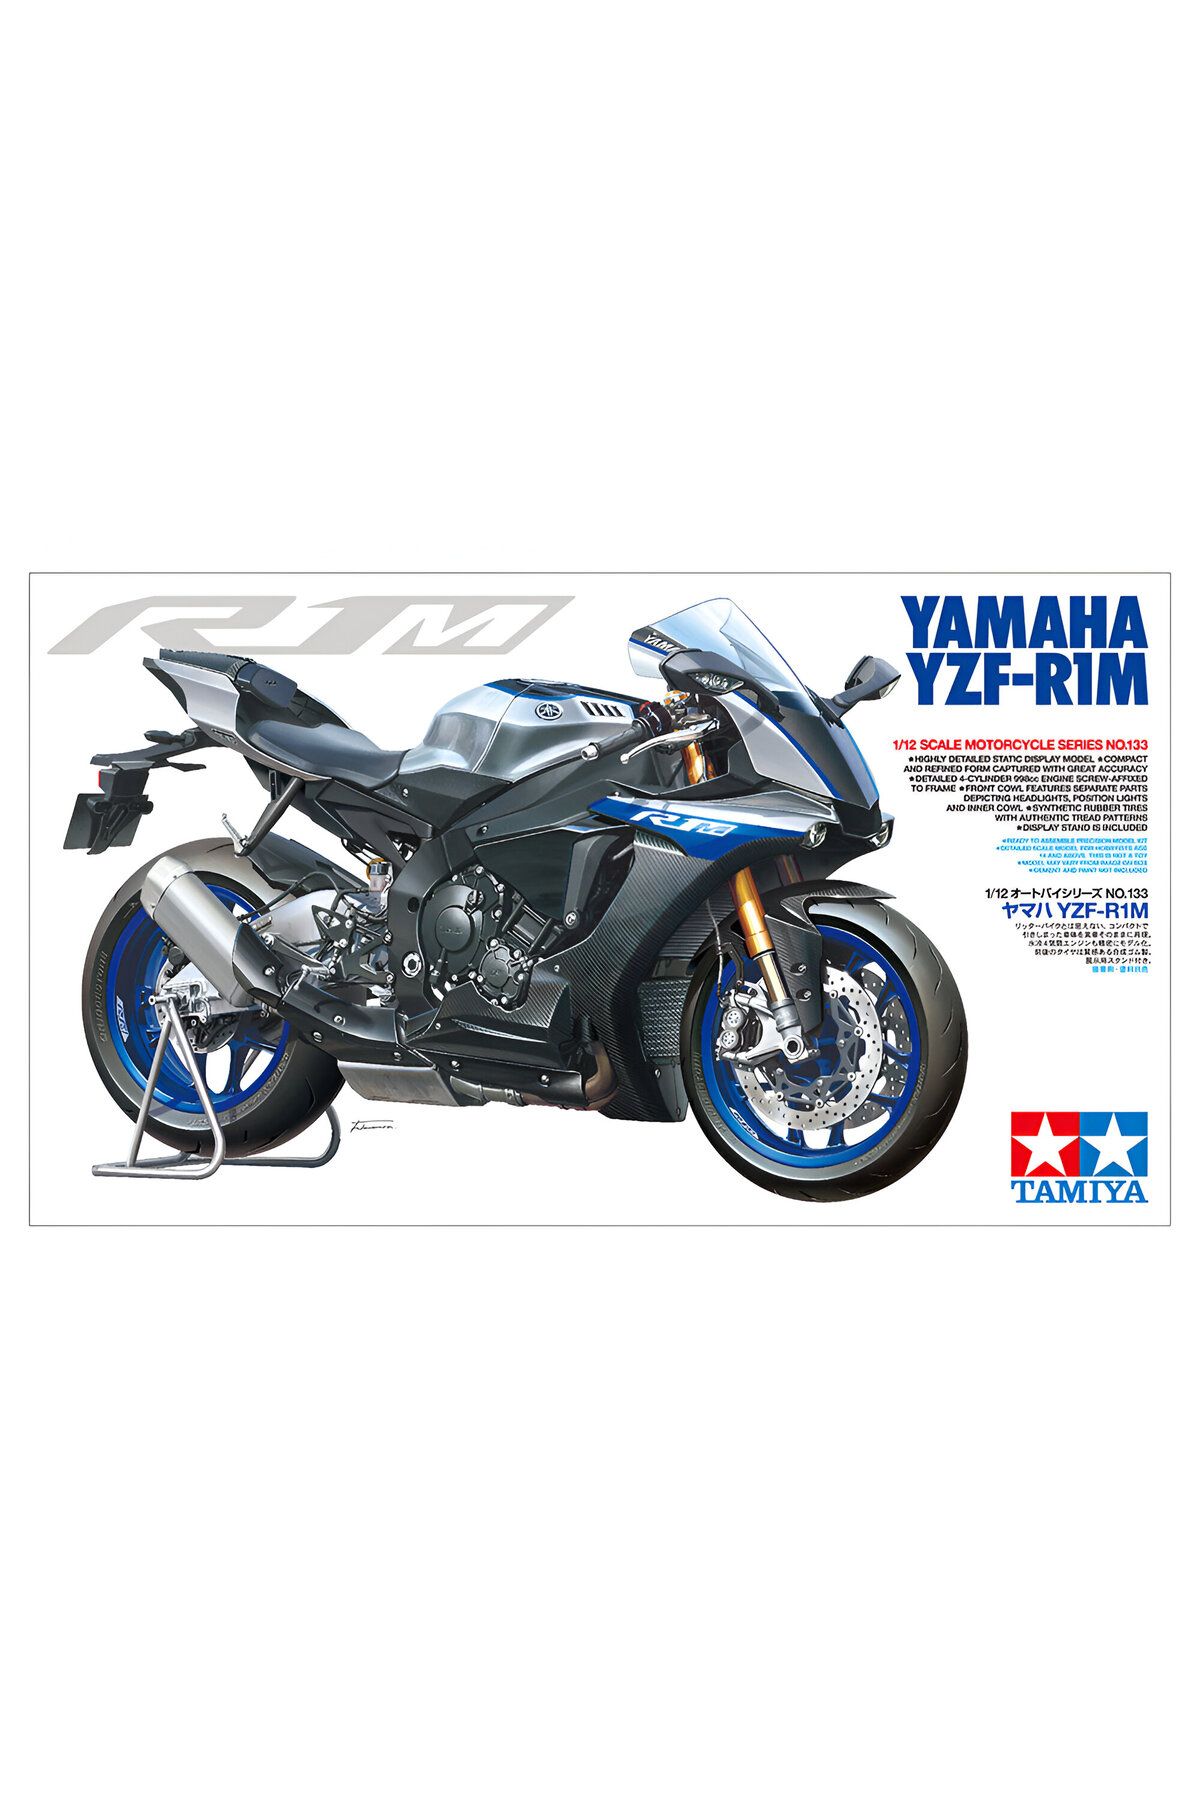 TAMIYA 1/12 Yamaha YZF-R1M Plastik Motosiklet Maket Kiti, Demonte Hobi Seti